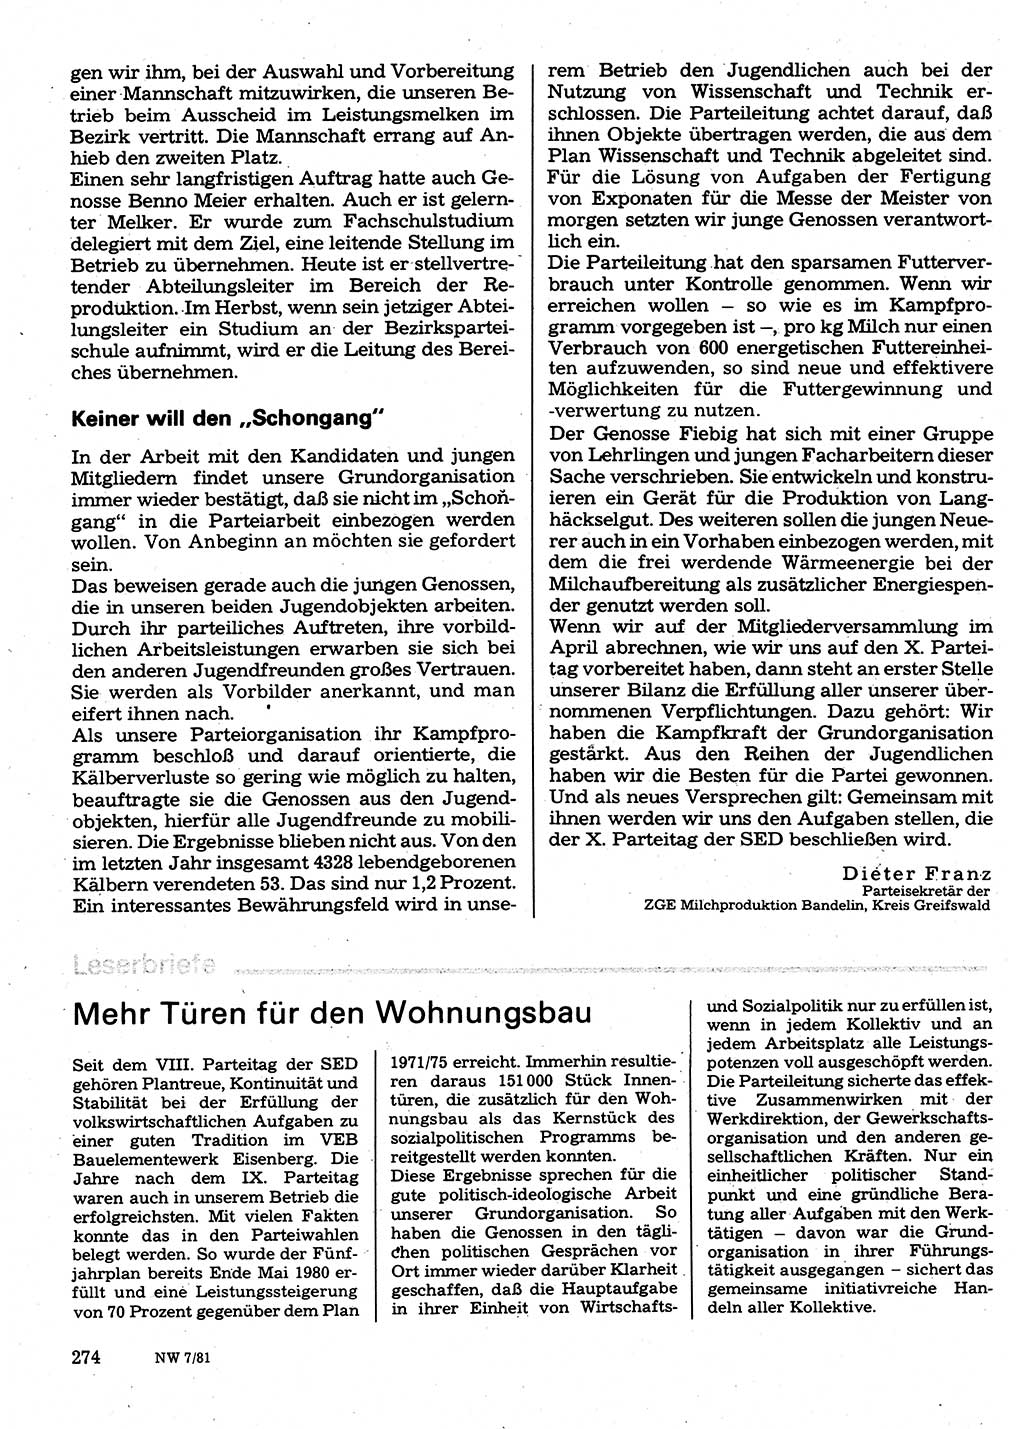 Neuer Weg (NW), Organ des Zentralkomitees (ZK) der SED (Sozialistische Einheitspartei Deutschlands) für Fragen des Parteilebens, 36. Jahrgang [Deutsche Demokratische Republik (DDR)] 1981, Seite 274 (NW ZK SED DDR 1981, S. 274)